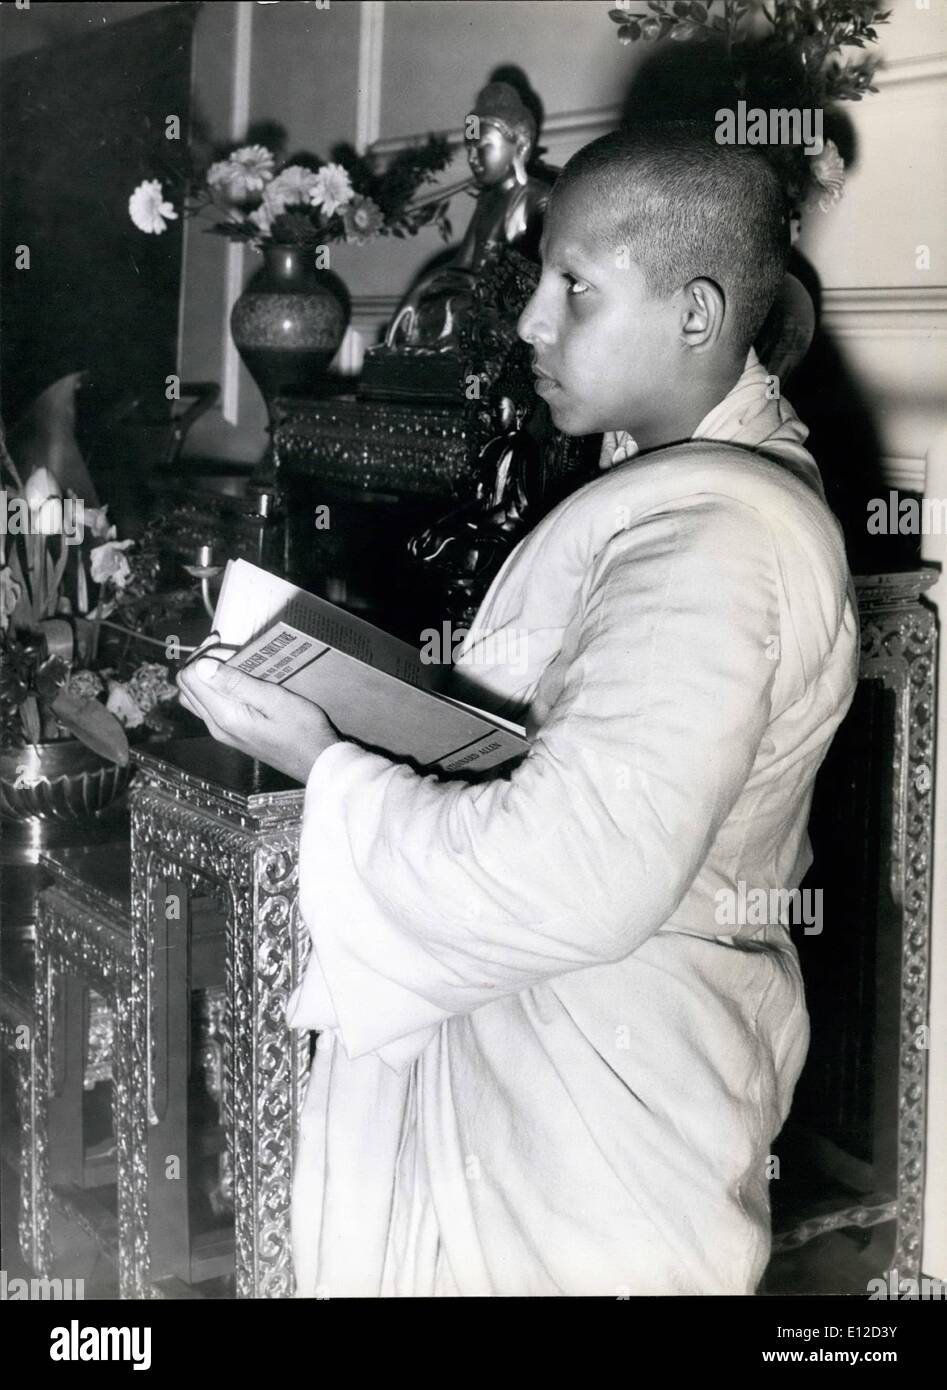 19 déc., 2011 -, l'Dhammaratana 14 ans, prêtre, d'études anglais ainsi que sa religion, dans le placid entouré de la London Buddist temple. Banque D'Images